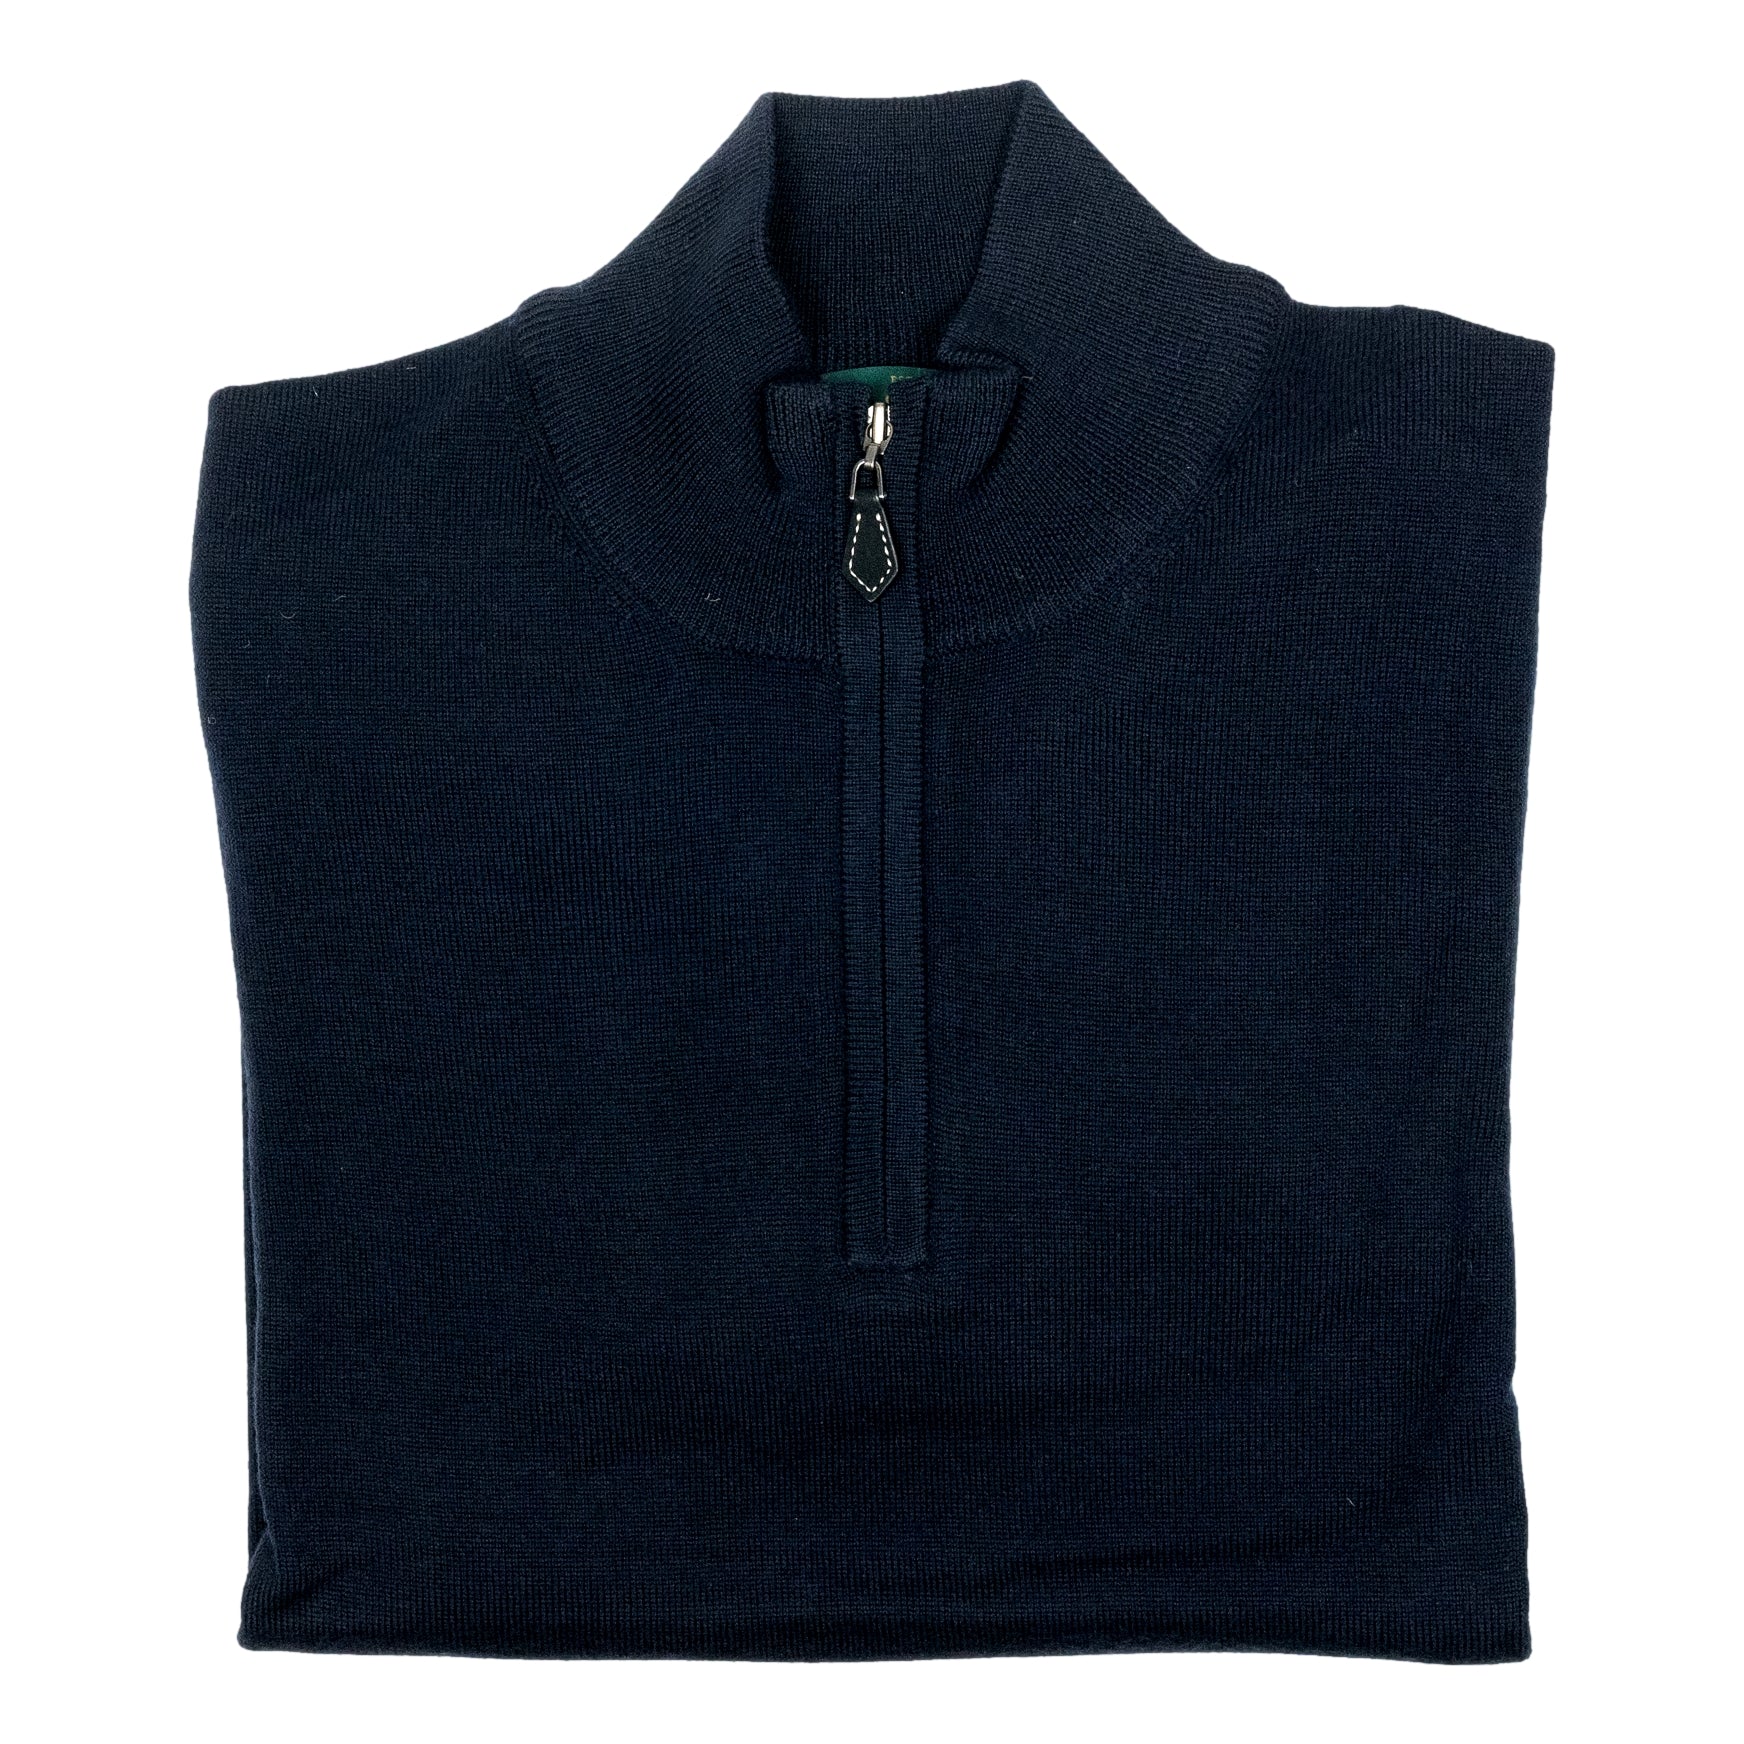 Barton Merino Wool Quarter Zip Sweater